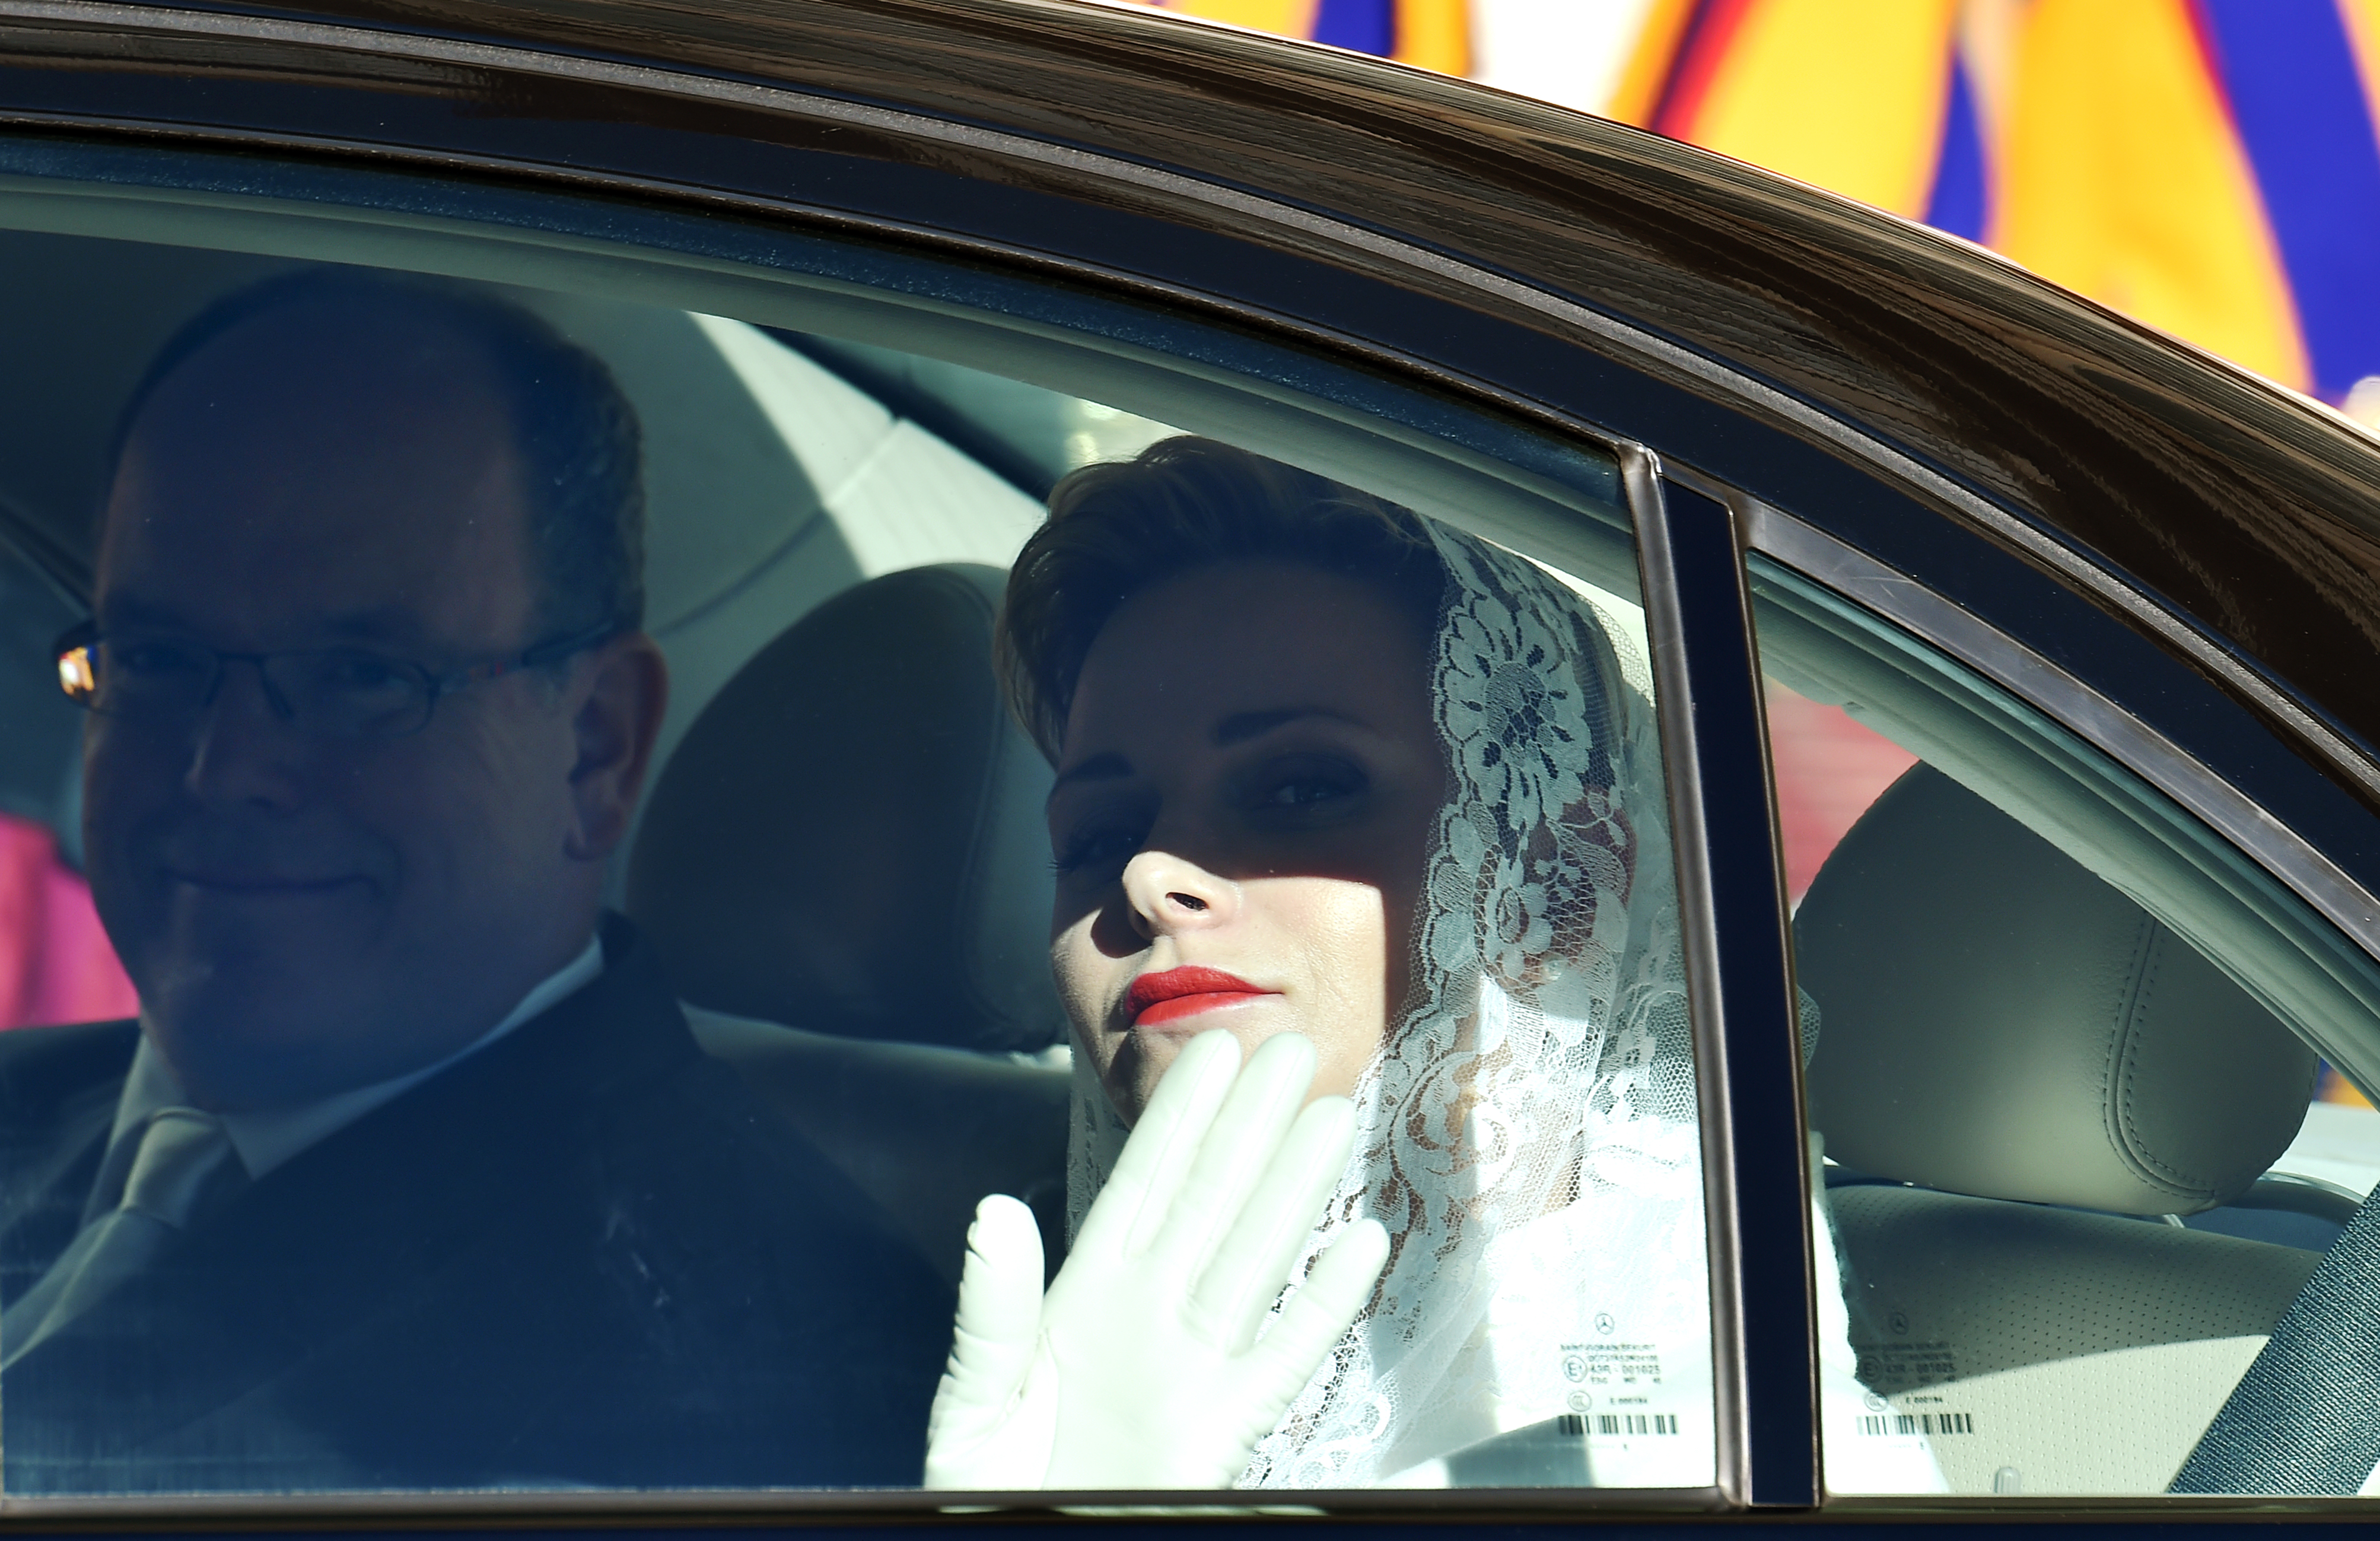 Principe Alberto II de Monaco (L) y su esposa Charlene (R) abandonan el Vaticano después de su encuentro con el Papa Francisco, 18 enero2016. / AFP / ALBERTO PIZZOLI